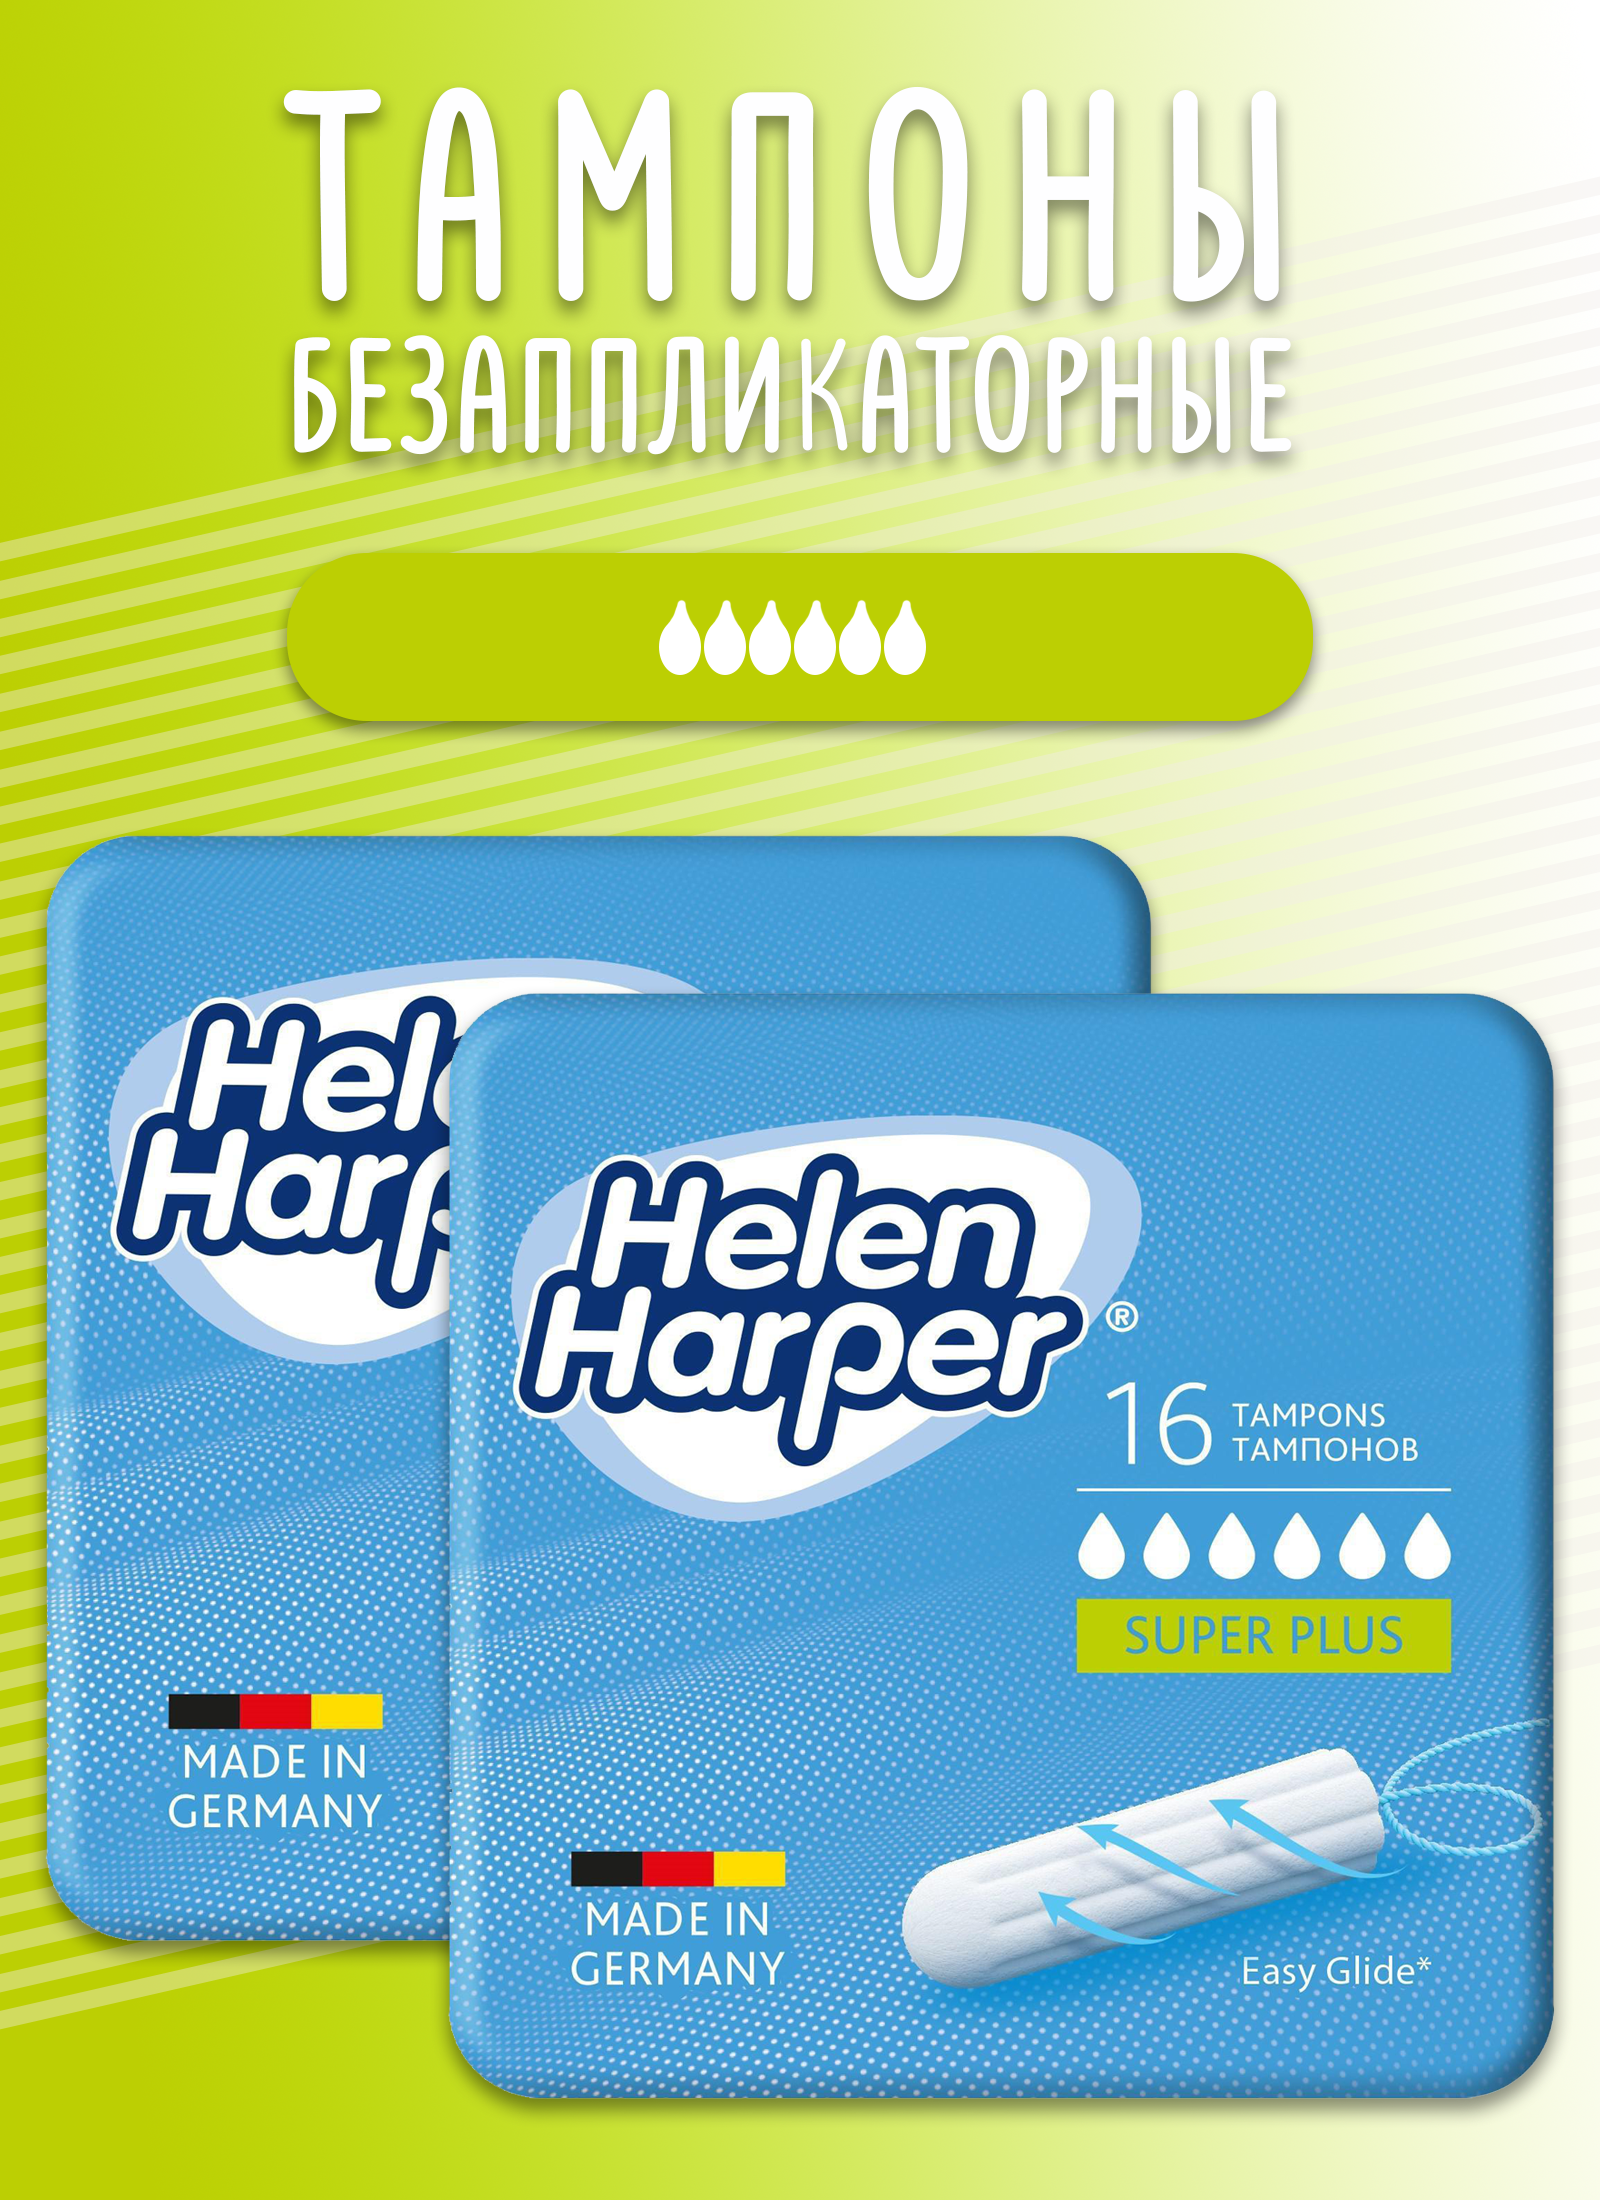 Тампоны безаппликаторные Helen Harper, Super Plus, 2 упаковки по 16 шт